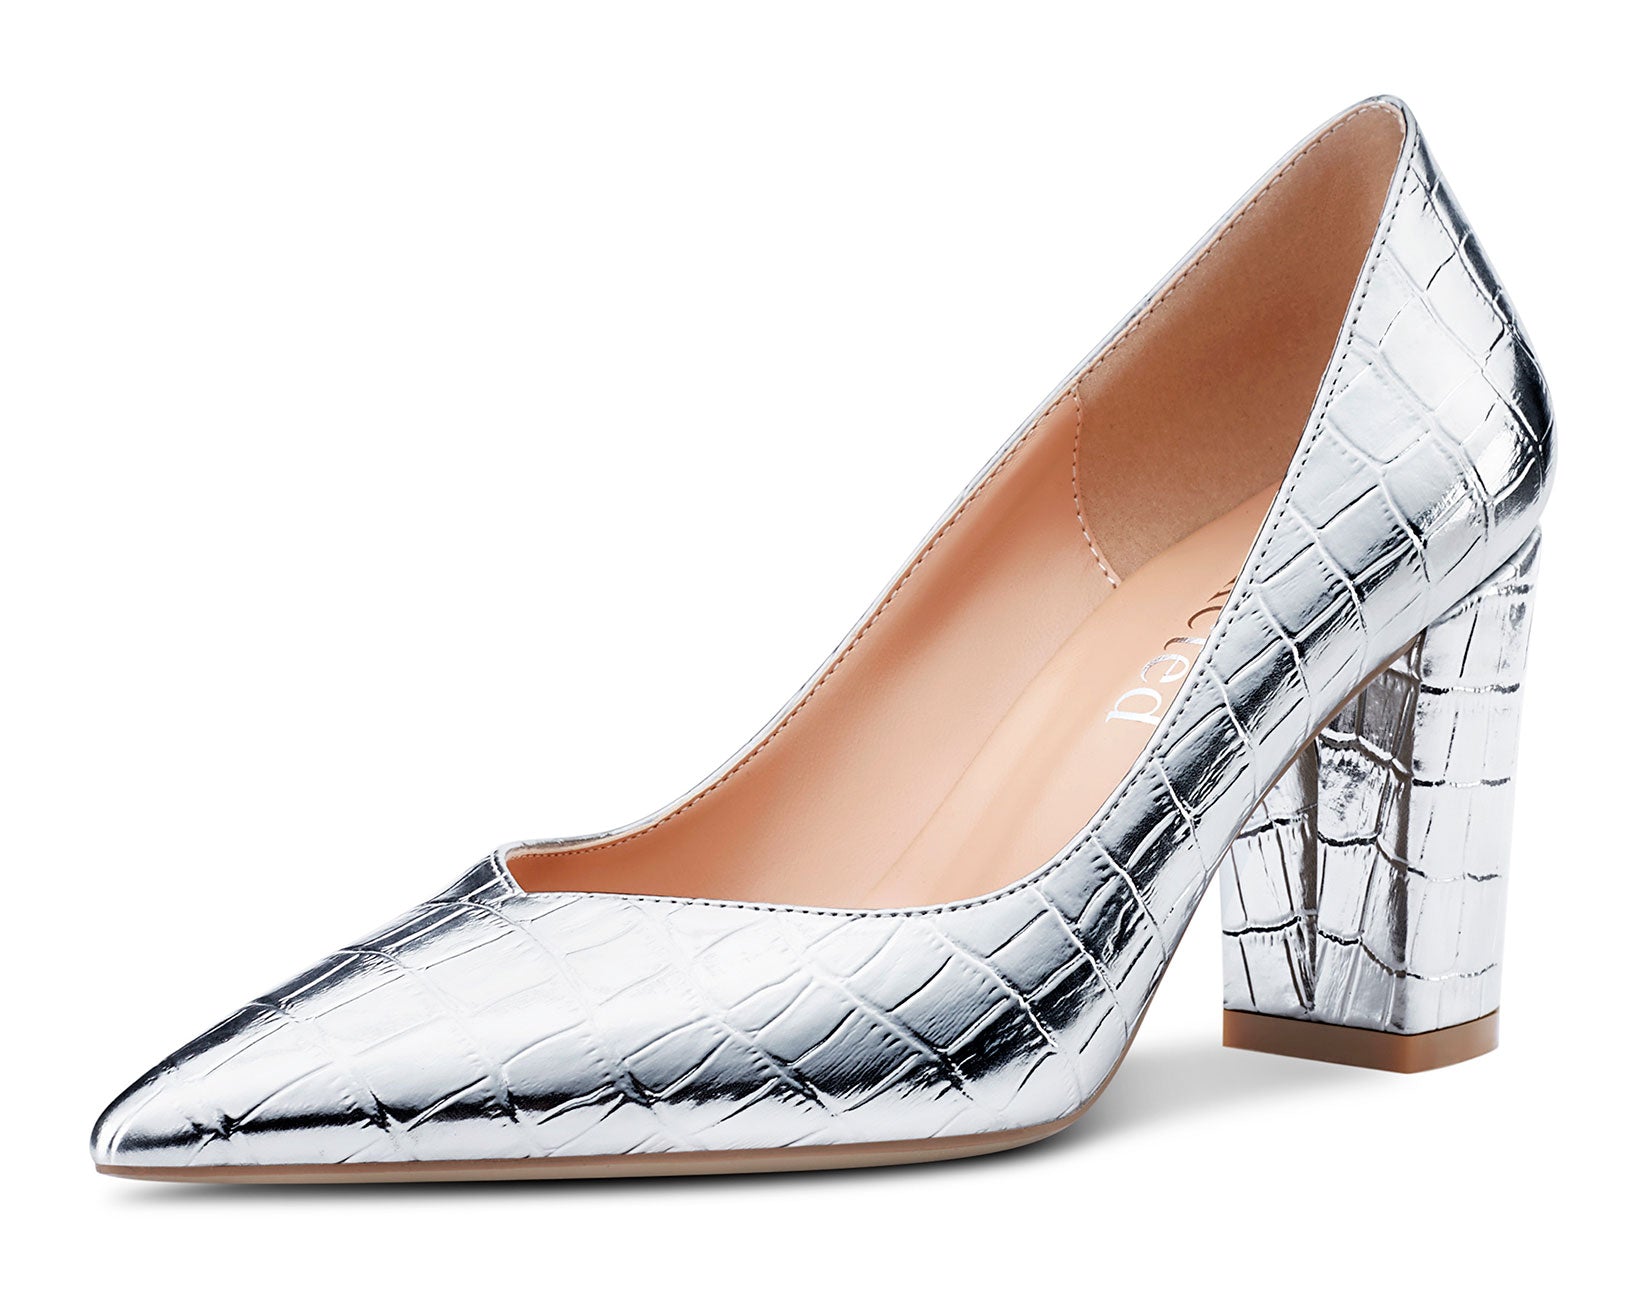 Women's Sparkly Silver Stilettos - Metallic Heels / Pointed Toes / Pink